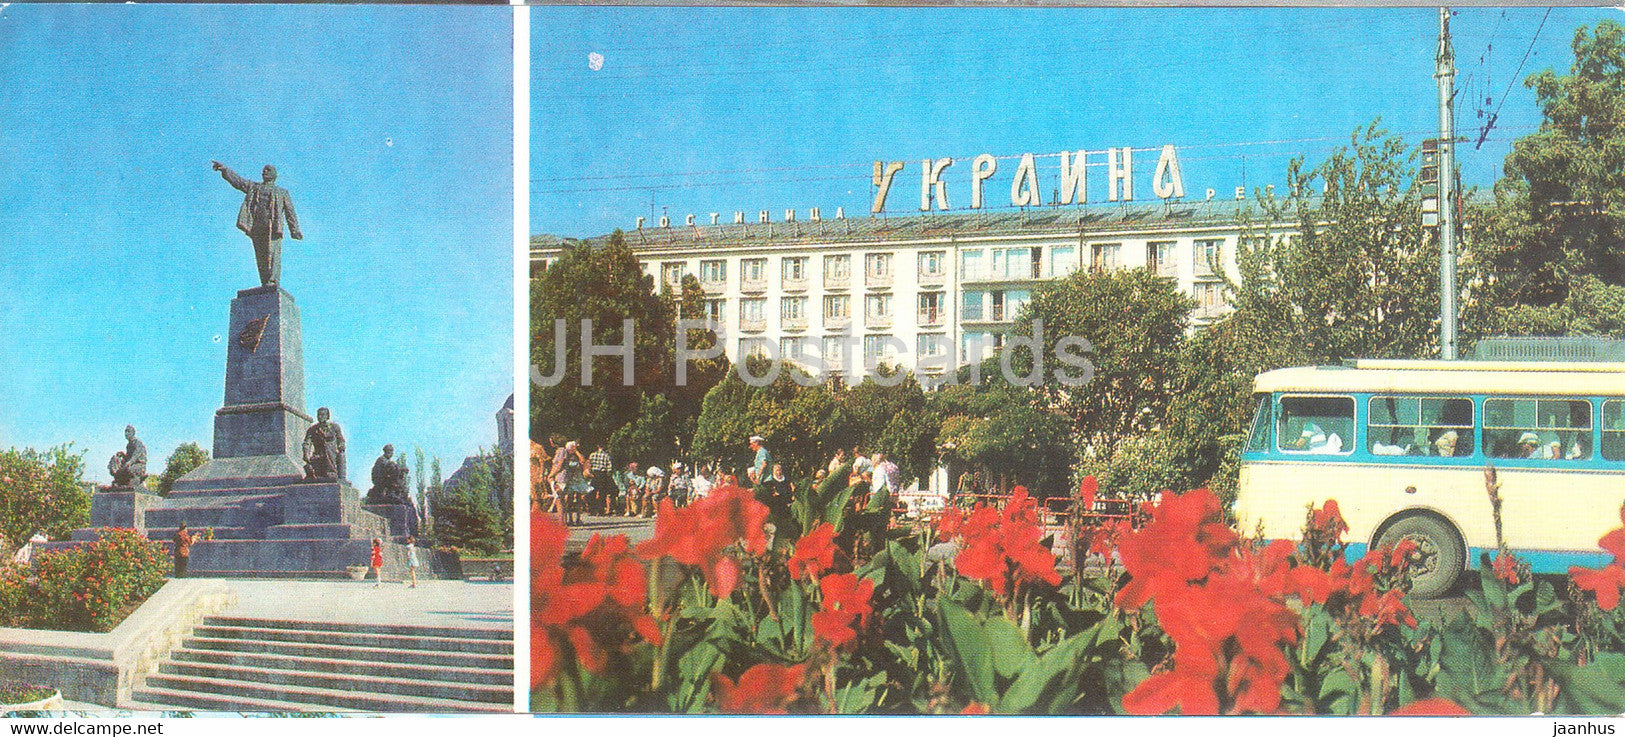 Sevastopol - monumet to Lenin - hotel Ukraina - bus - Crimea - 1981 - Ukraine USSR - unused - JH Postcards